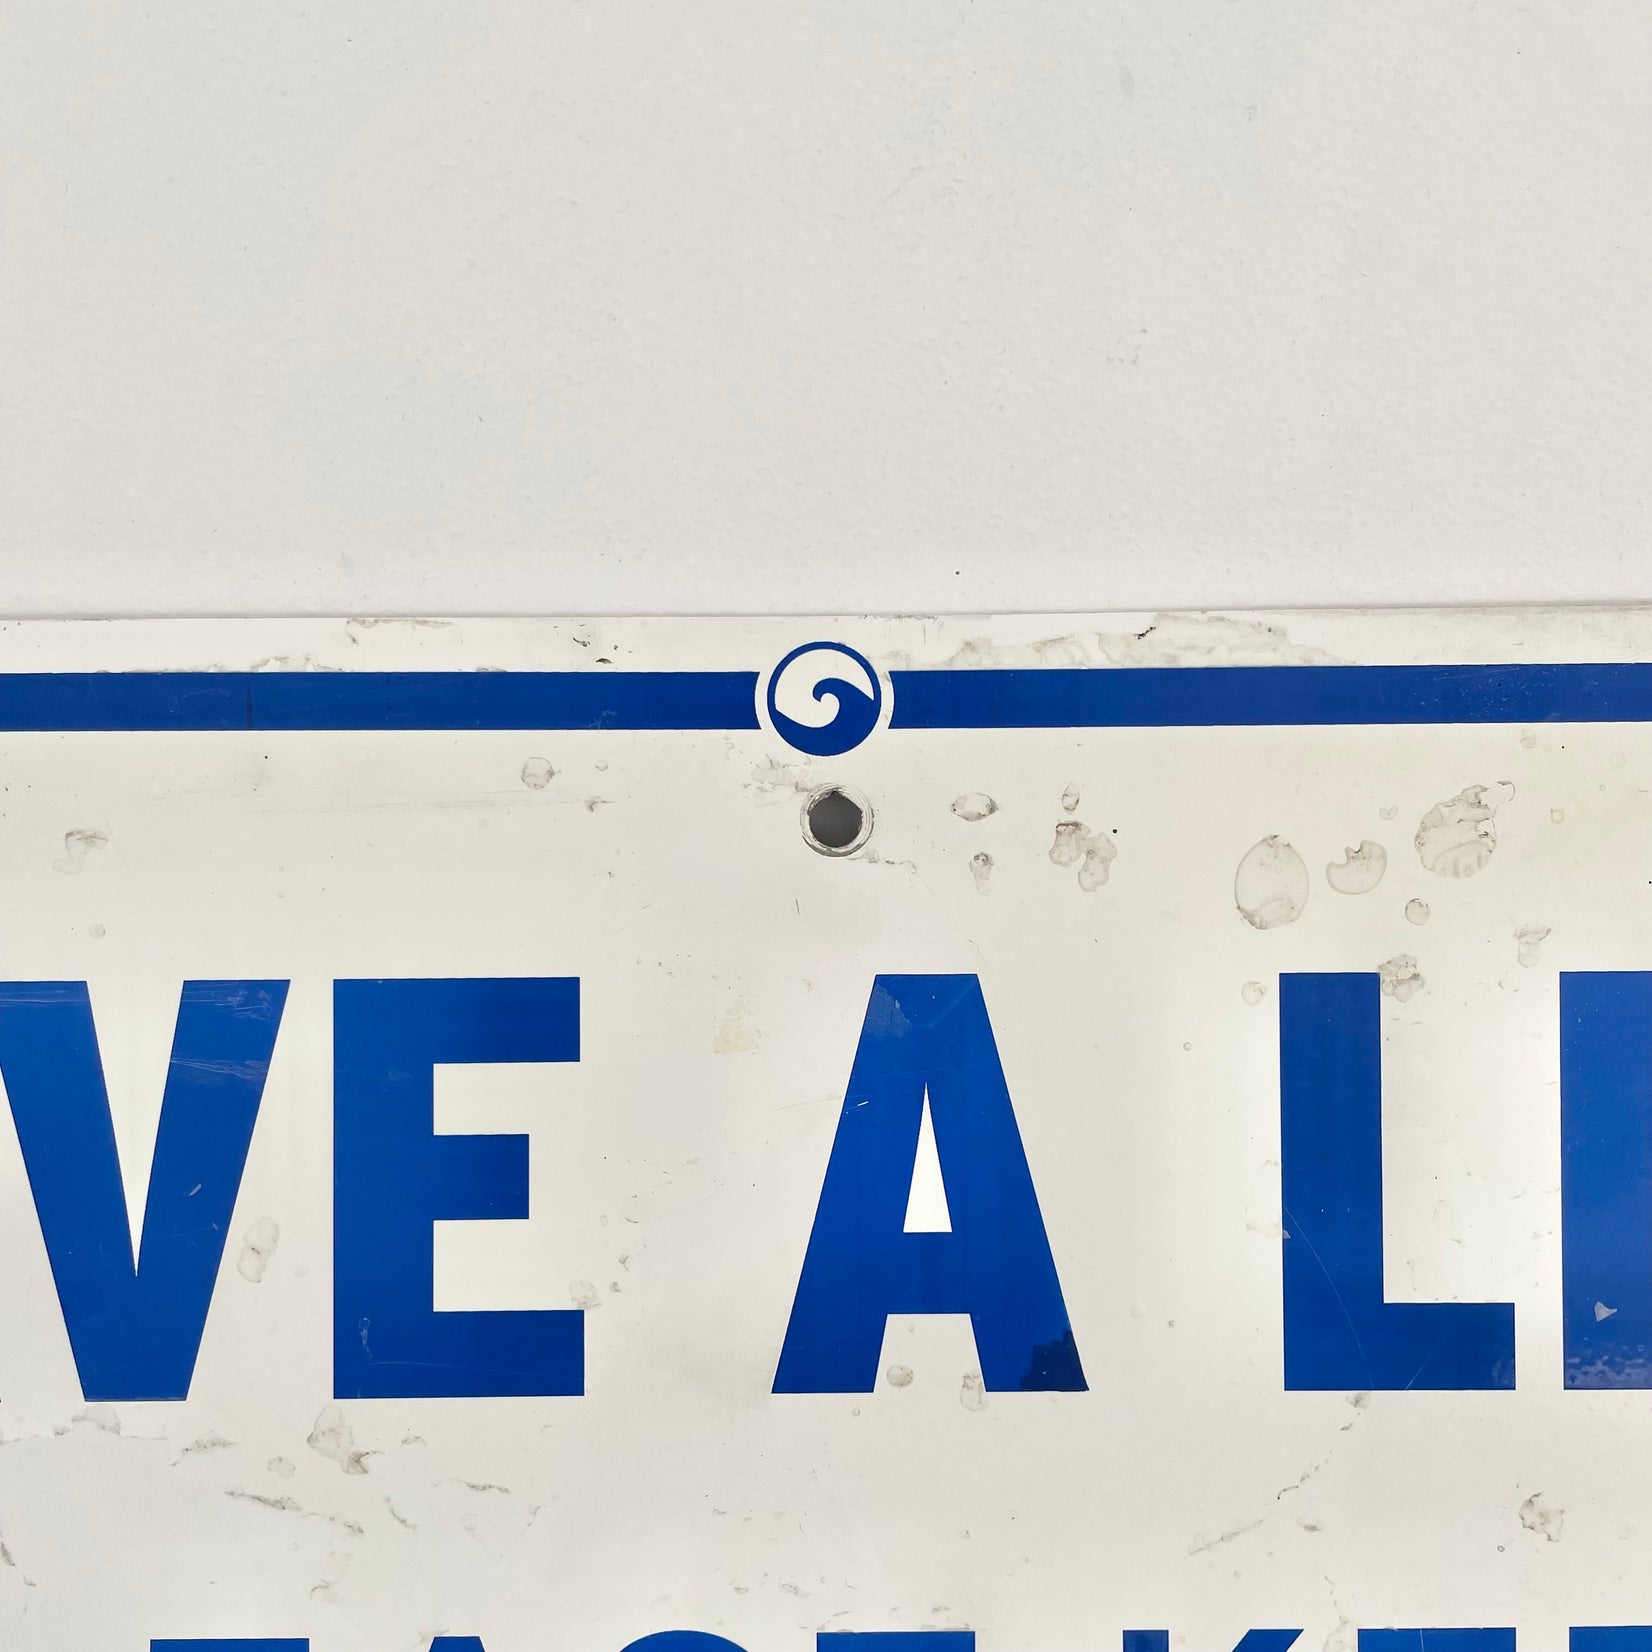 "Save a Life" Pool Sign, 1980s USA